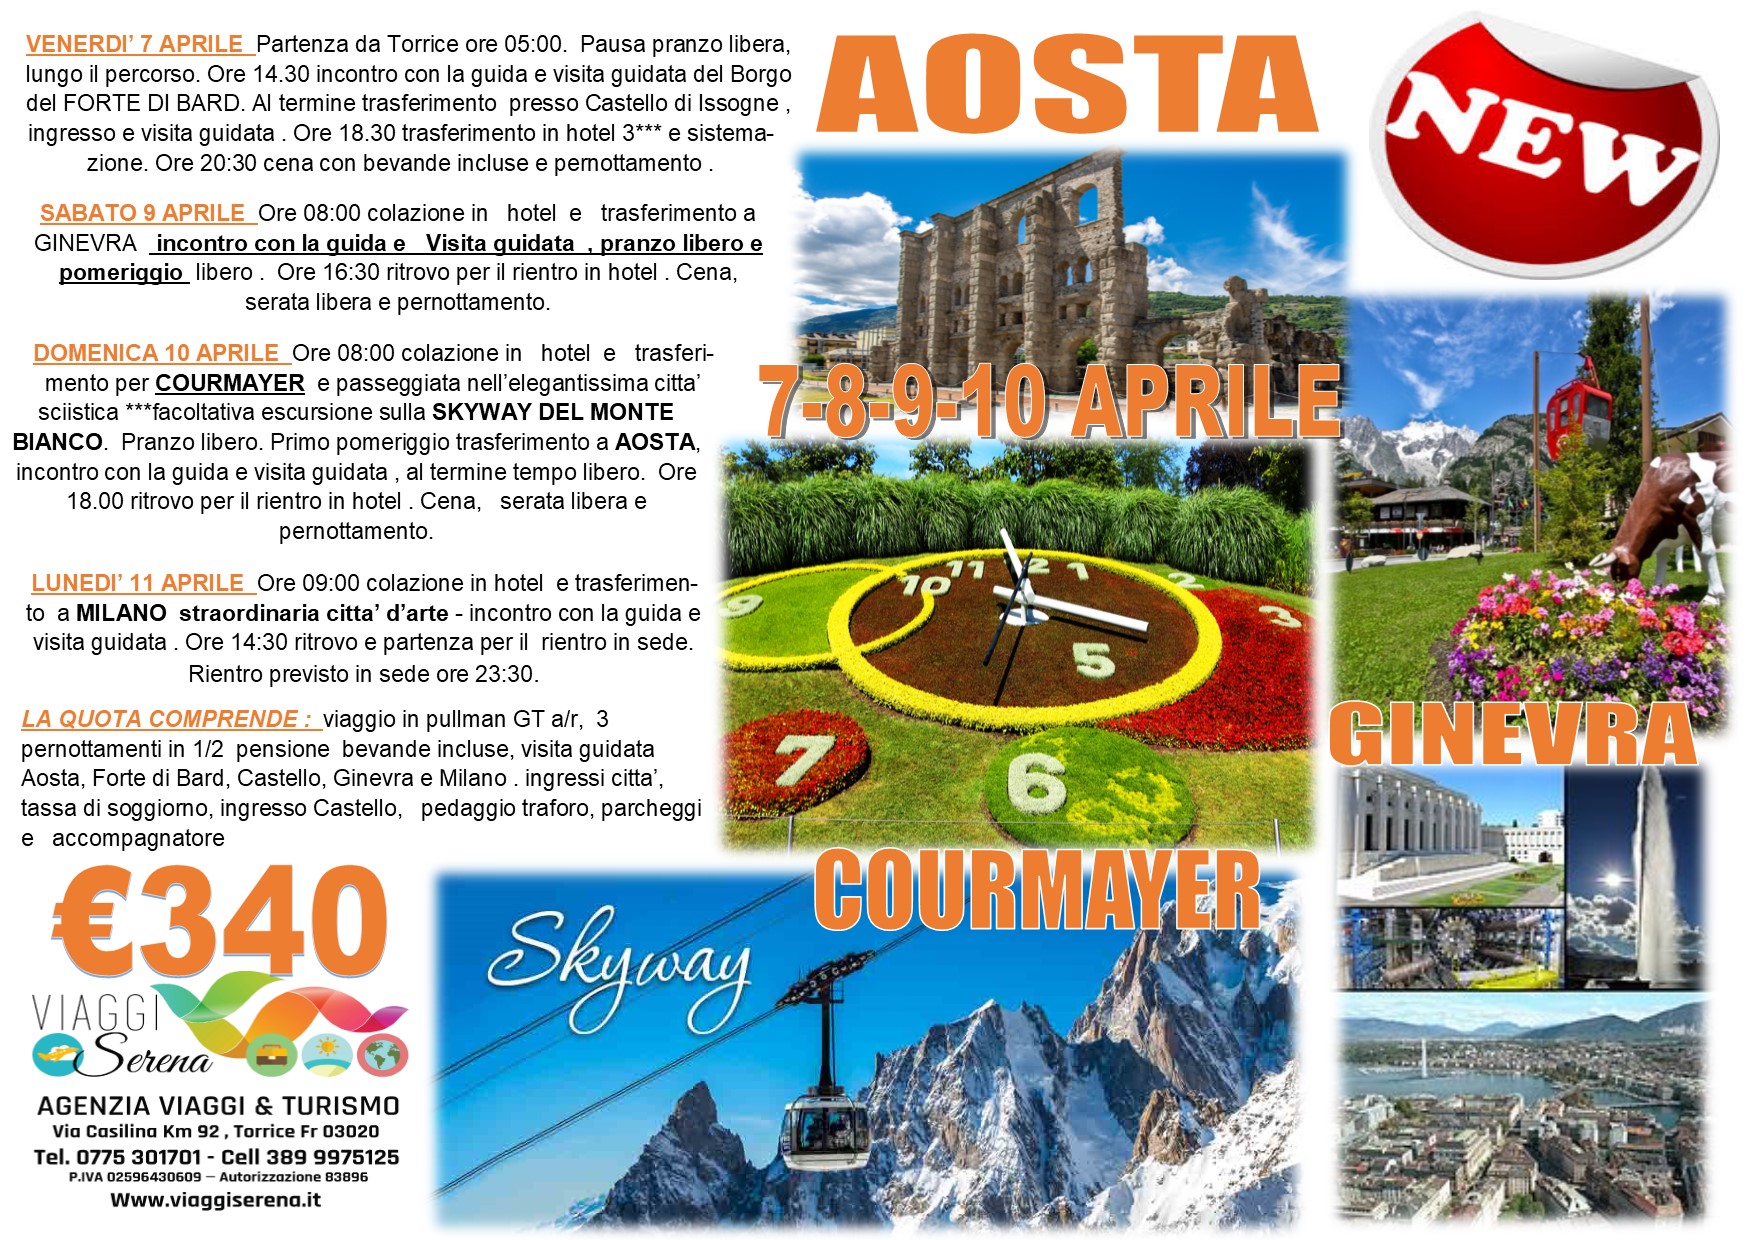 Viaggi di Gruppo: Pasqua Aosta, Courmayer, Ginevra e Milano 7-8-9-10 Aprile € 340,00